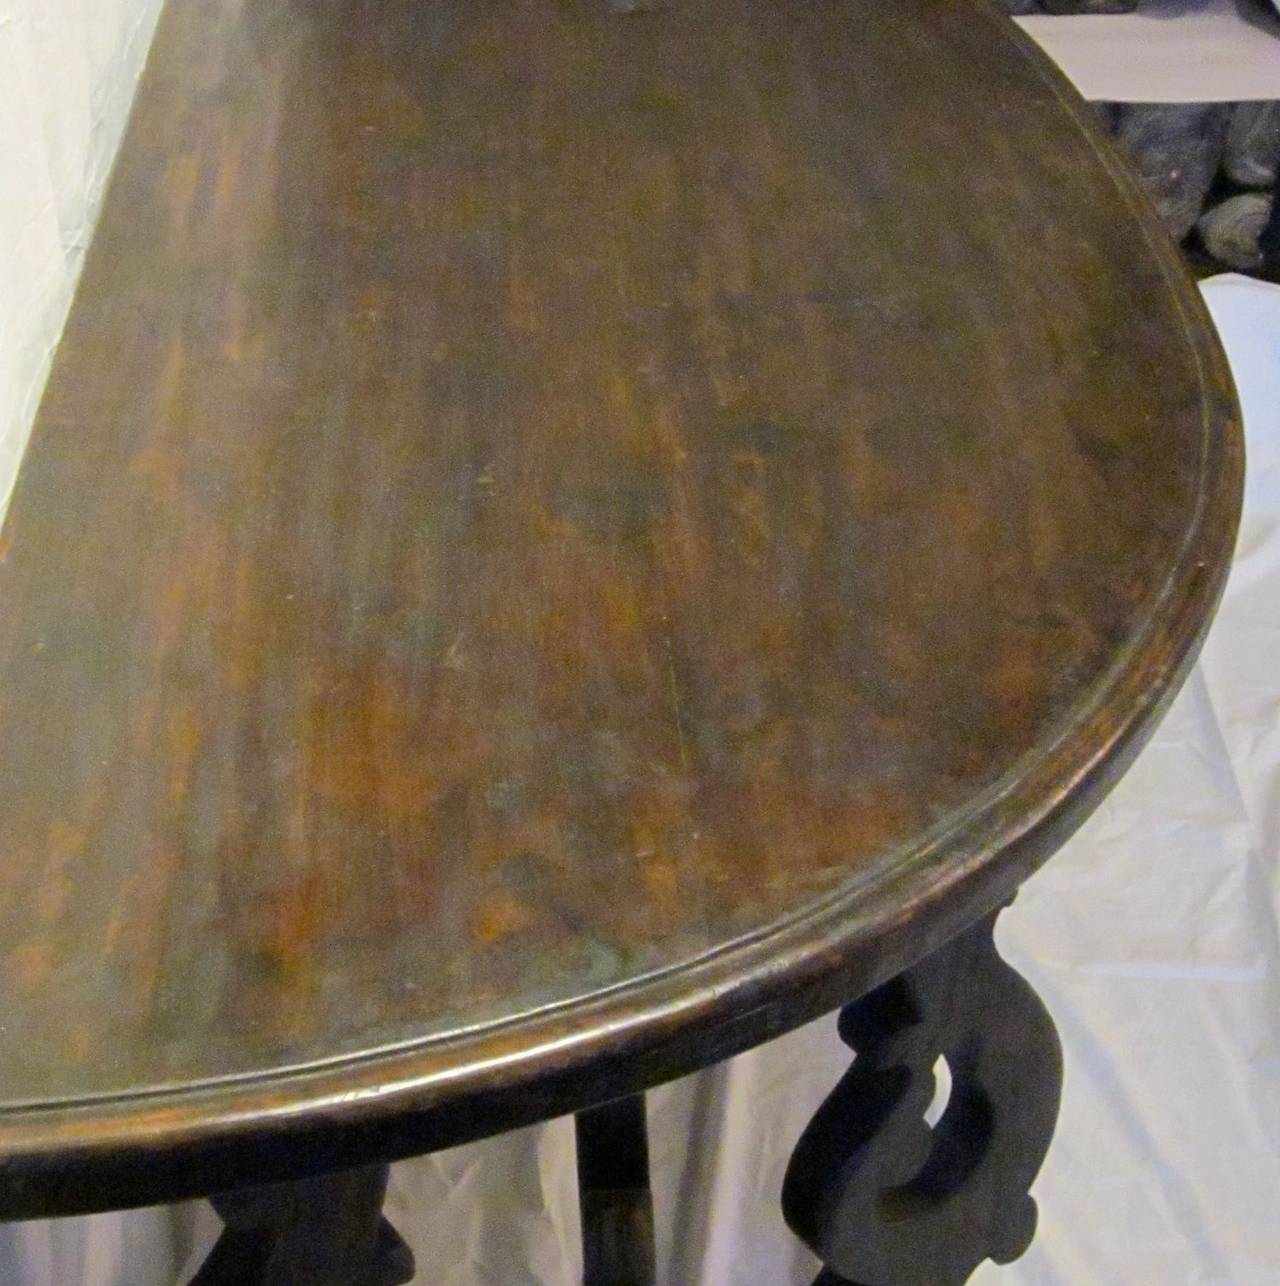 Italian Demilune/Fratino Tavolo Table, Italy, circa 18th Century